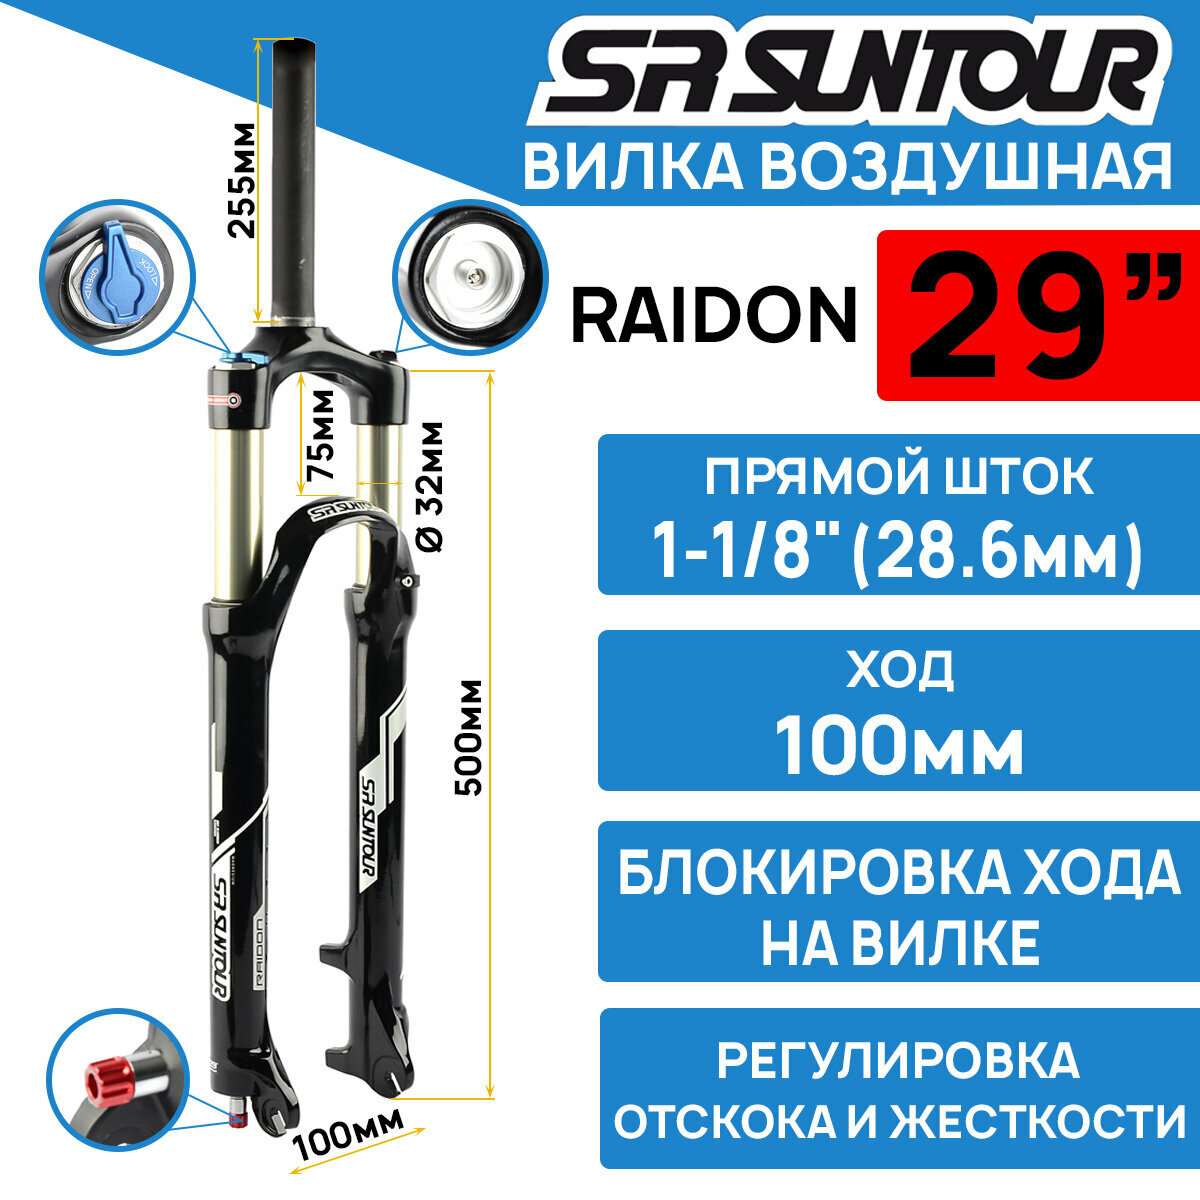 Амортизационная вилка Suntour SF16-RAIDON-XC LOR DS 29" шток 1-1/8 стальной, ход 100 мм, под эксцентрик, черная